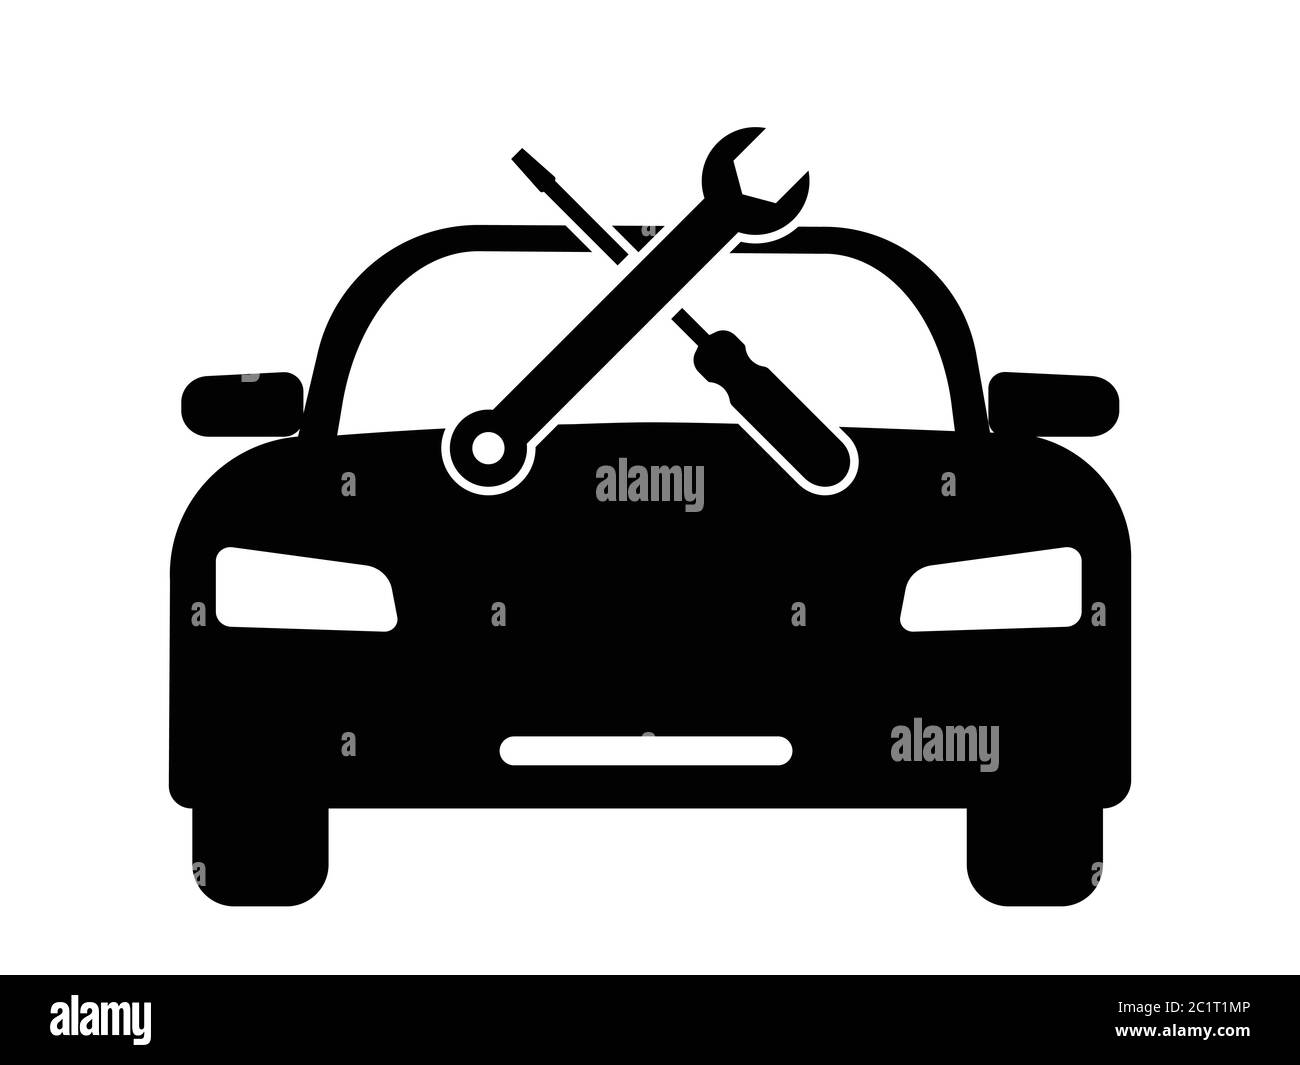 Riparazione Automobile manutenzione manutenzione Riparazione chiave utensile. Illustrazione nera isolata su sfondo bianco. Vettore EPS Illustrazione Vettoriale